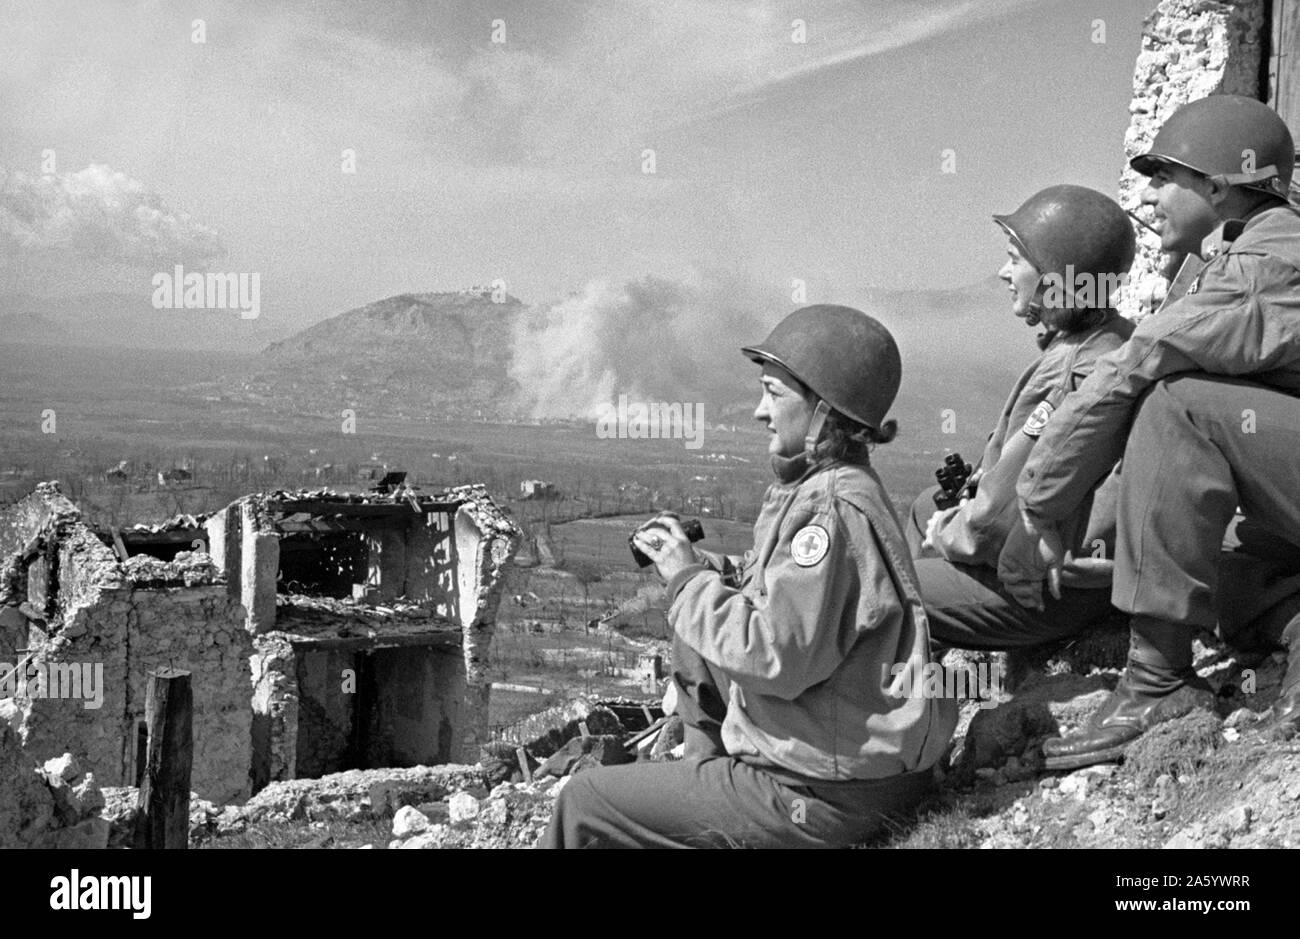 Photographie d'infirmières de la Croix-Rouge en regardant les premières étapes de la Bataille de Monte Cassino, partie de la Seconde Guerre mondiale, campagne d'Italie. Datée 1944 Banque D'Images